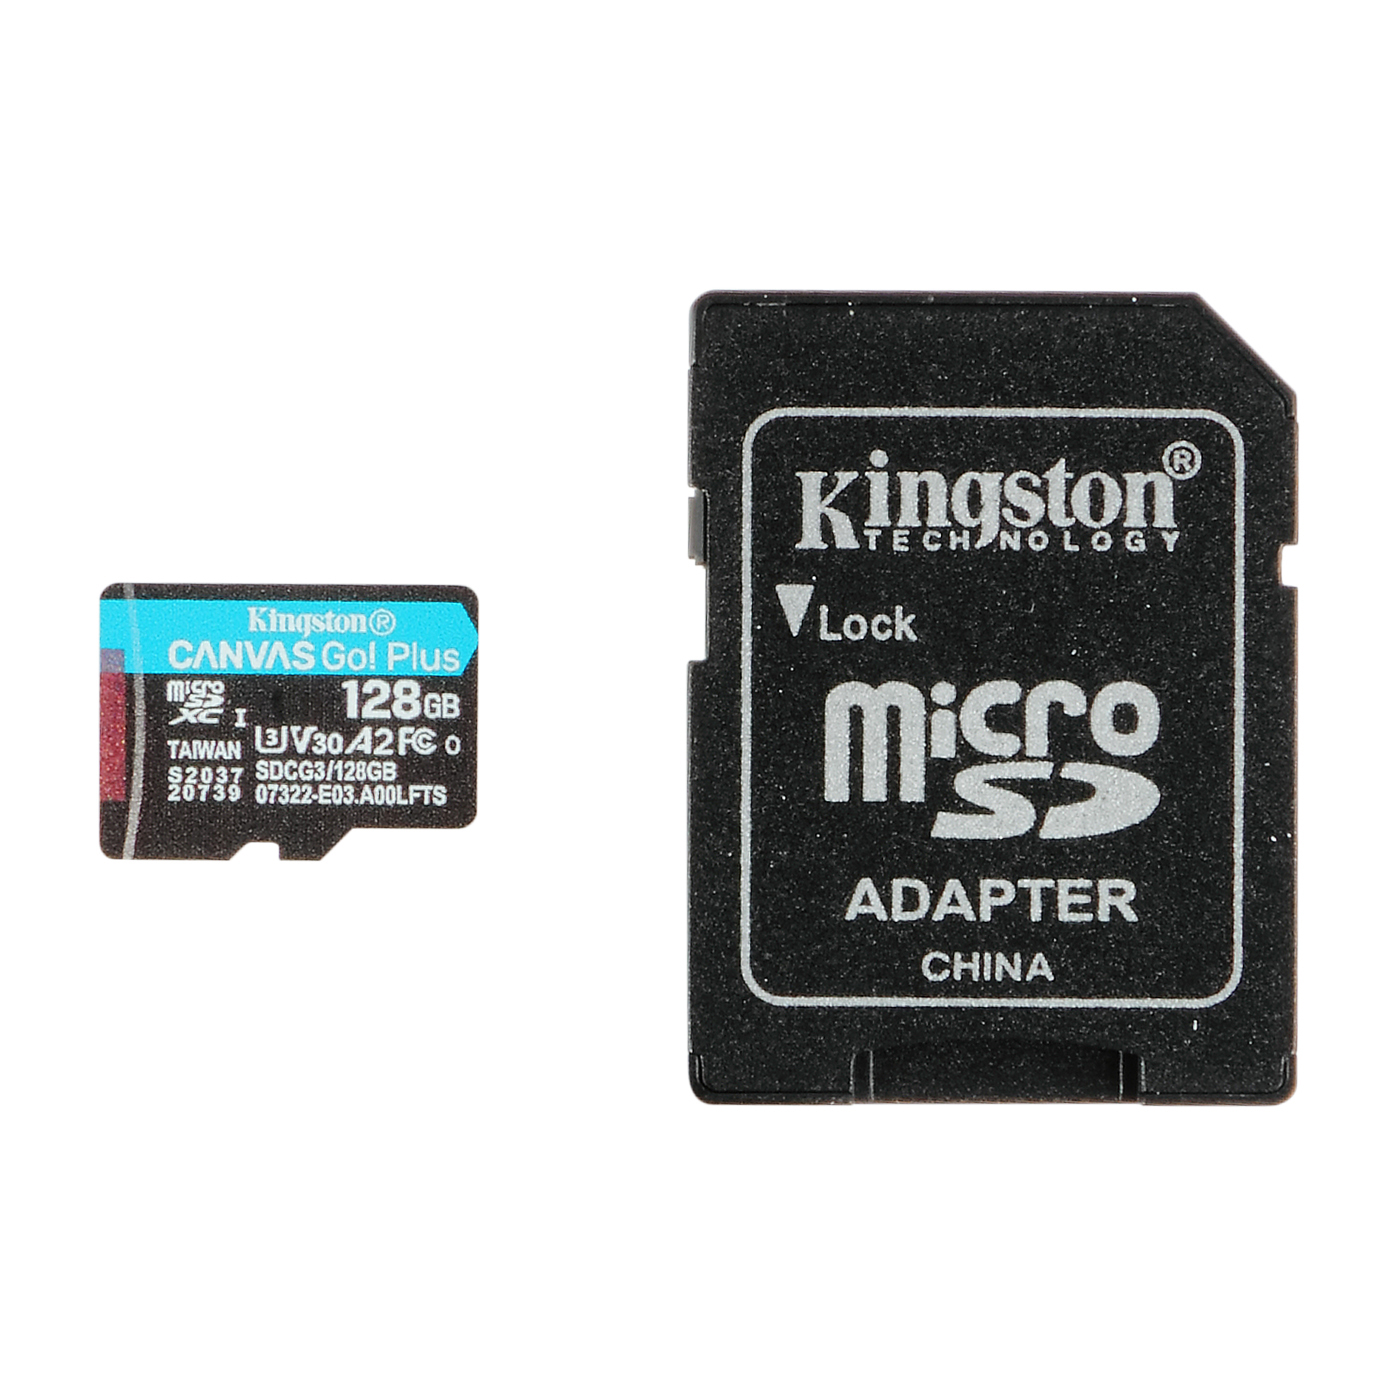 マイクロ SDカード  32GB MicroSD メモリーカード  高速 U3 Class10　メール便限定送料無料 MSD-32G